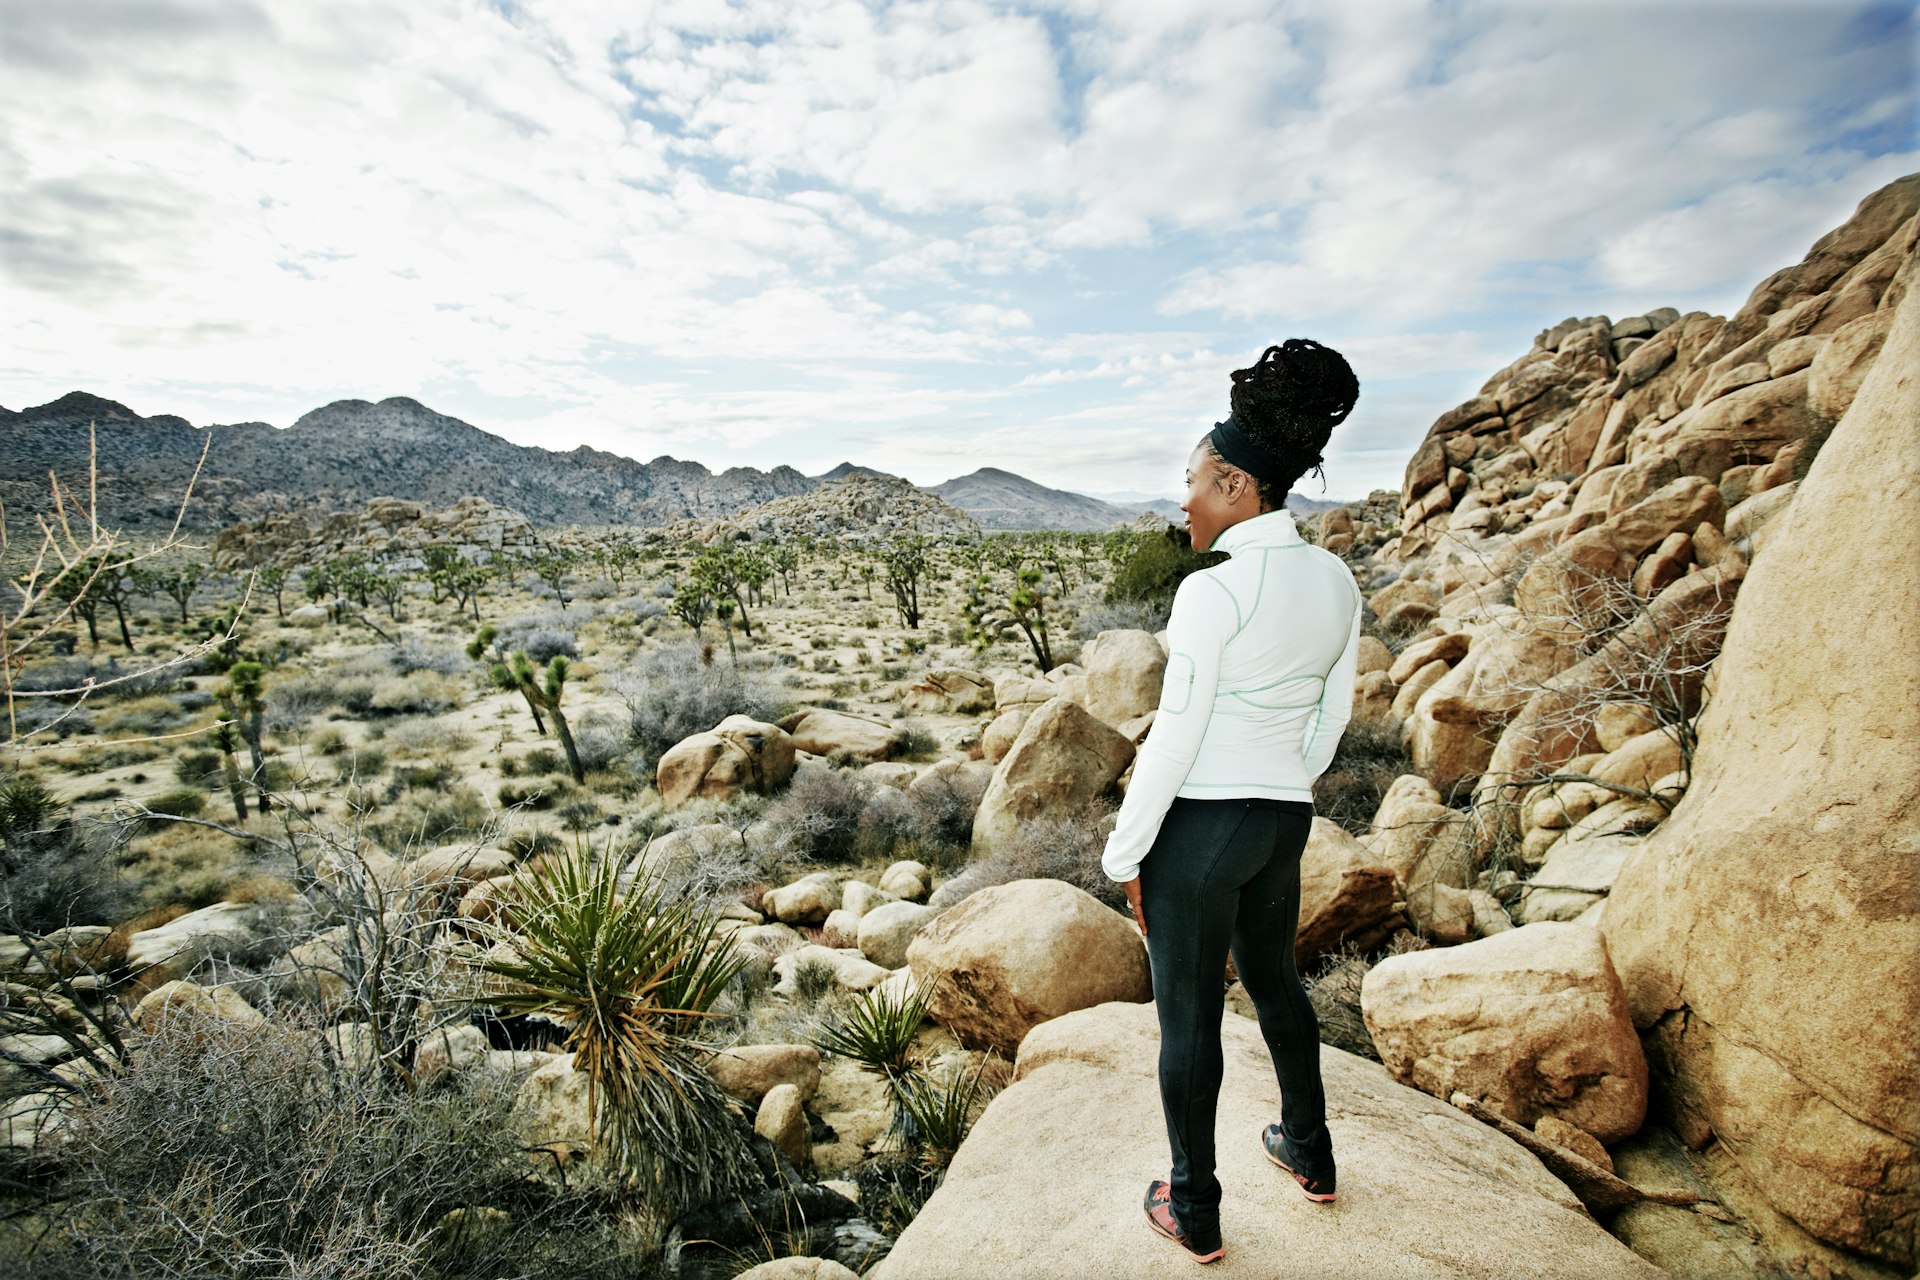 A runner stands on a rock in a desert landscape.